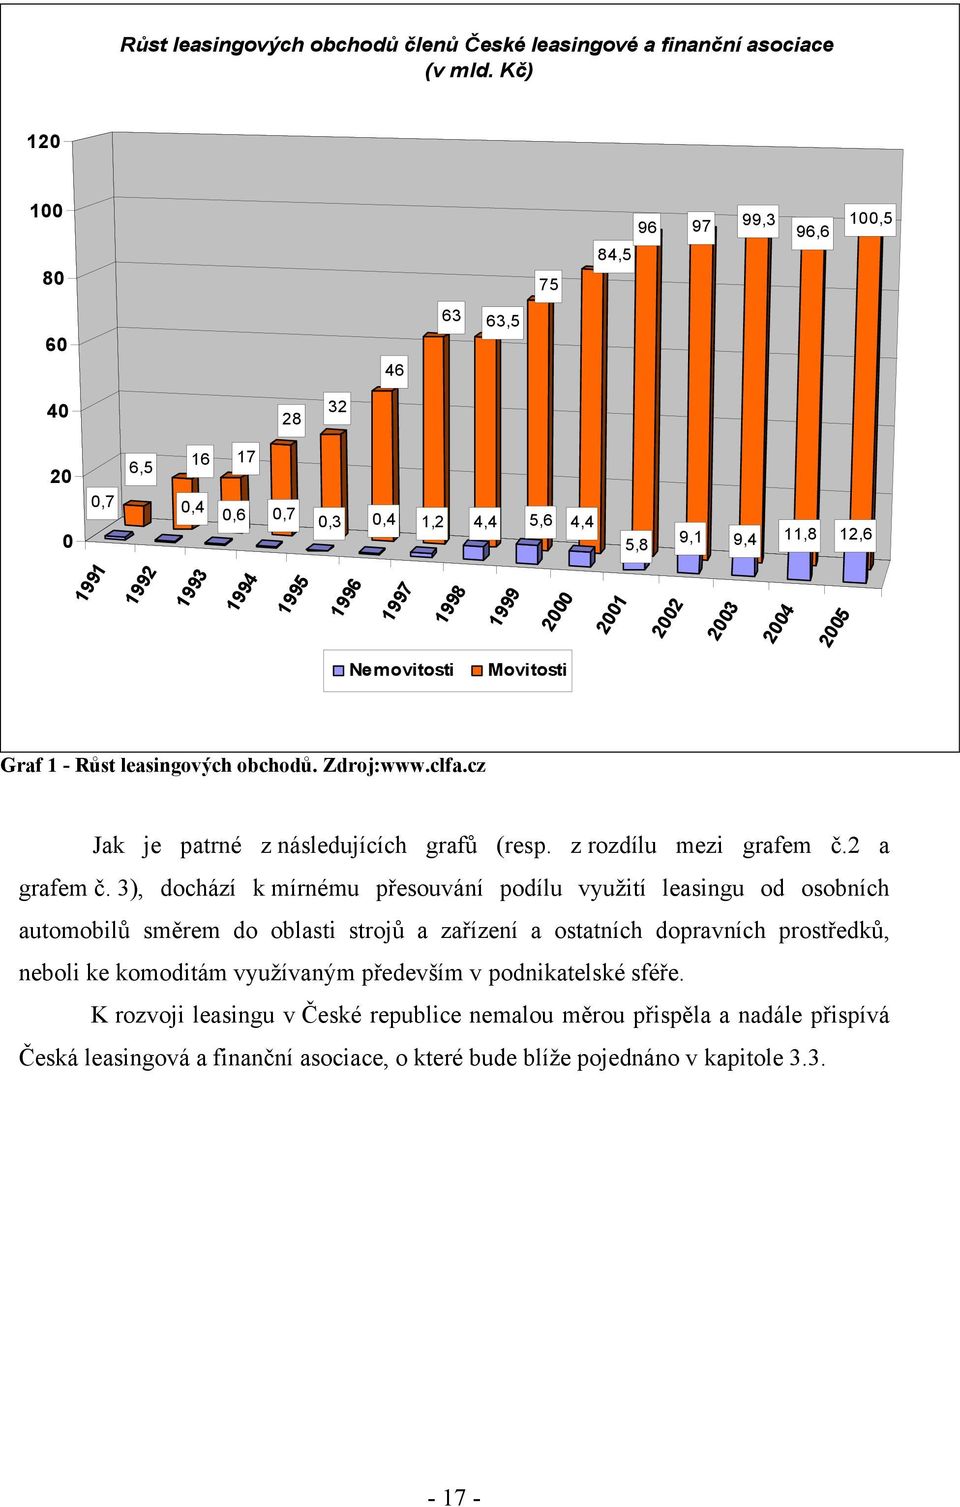 2002 2003 2004 2005 Nemovitosti Movitosti Graf 1 - Růst leasingových obchodů. Zdroj:www.clfa.cz Jak je patrné z následujících grafů (resp. z rozdílu mezi grafem č.2 a grafem č.